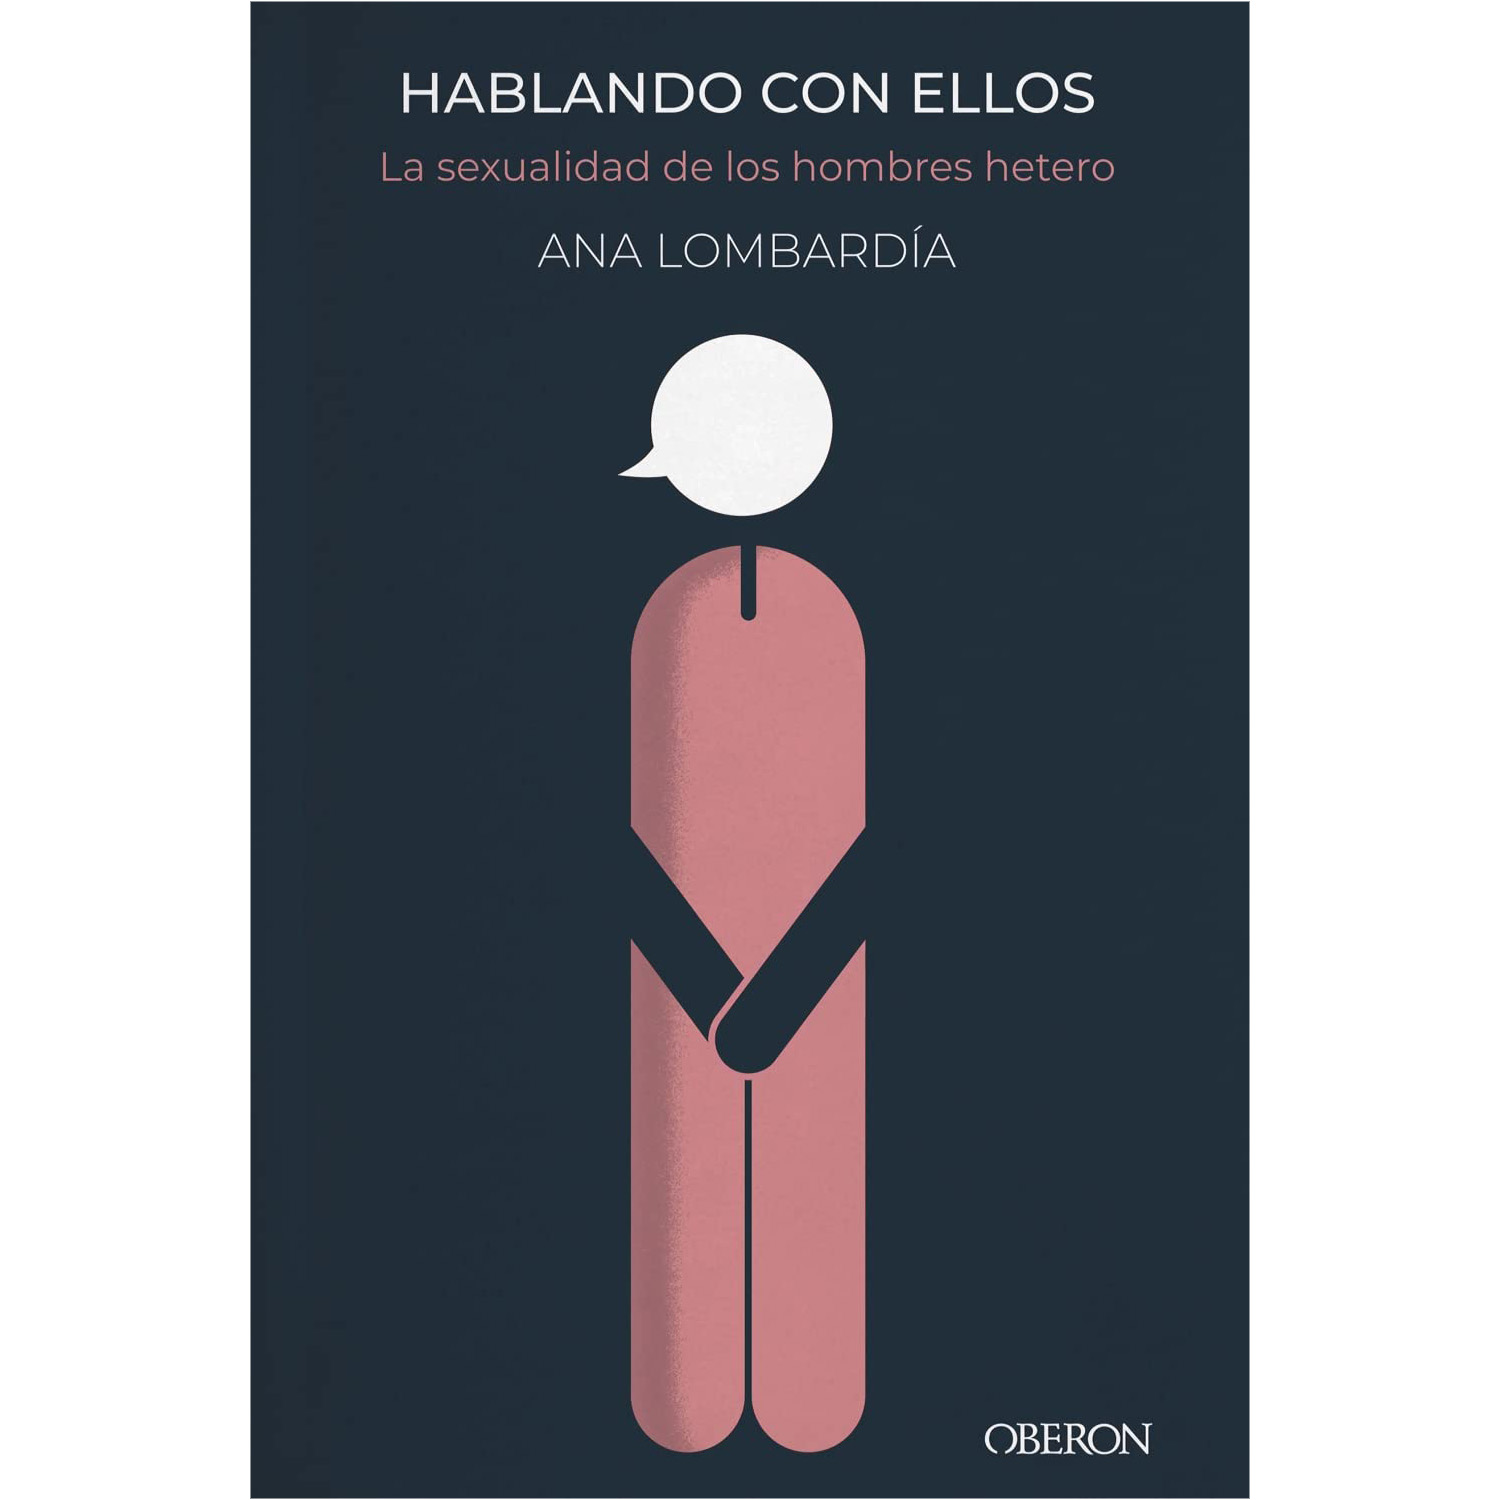 HABLANDO CON ELLOS - Ana Lombardia